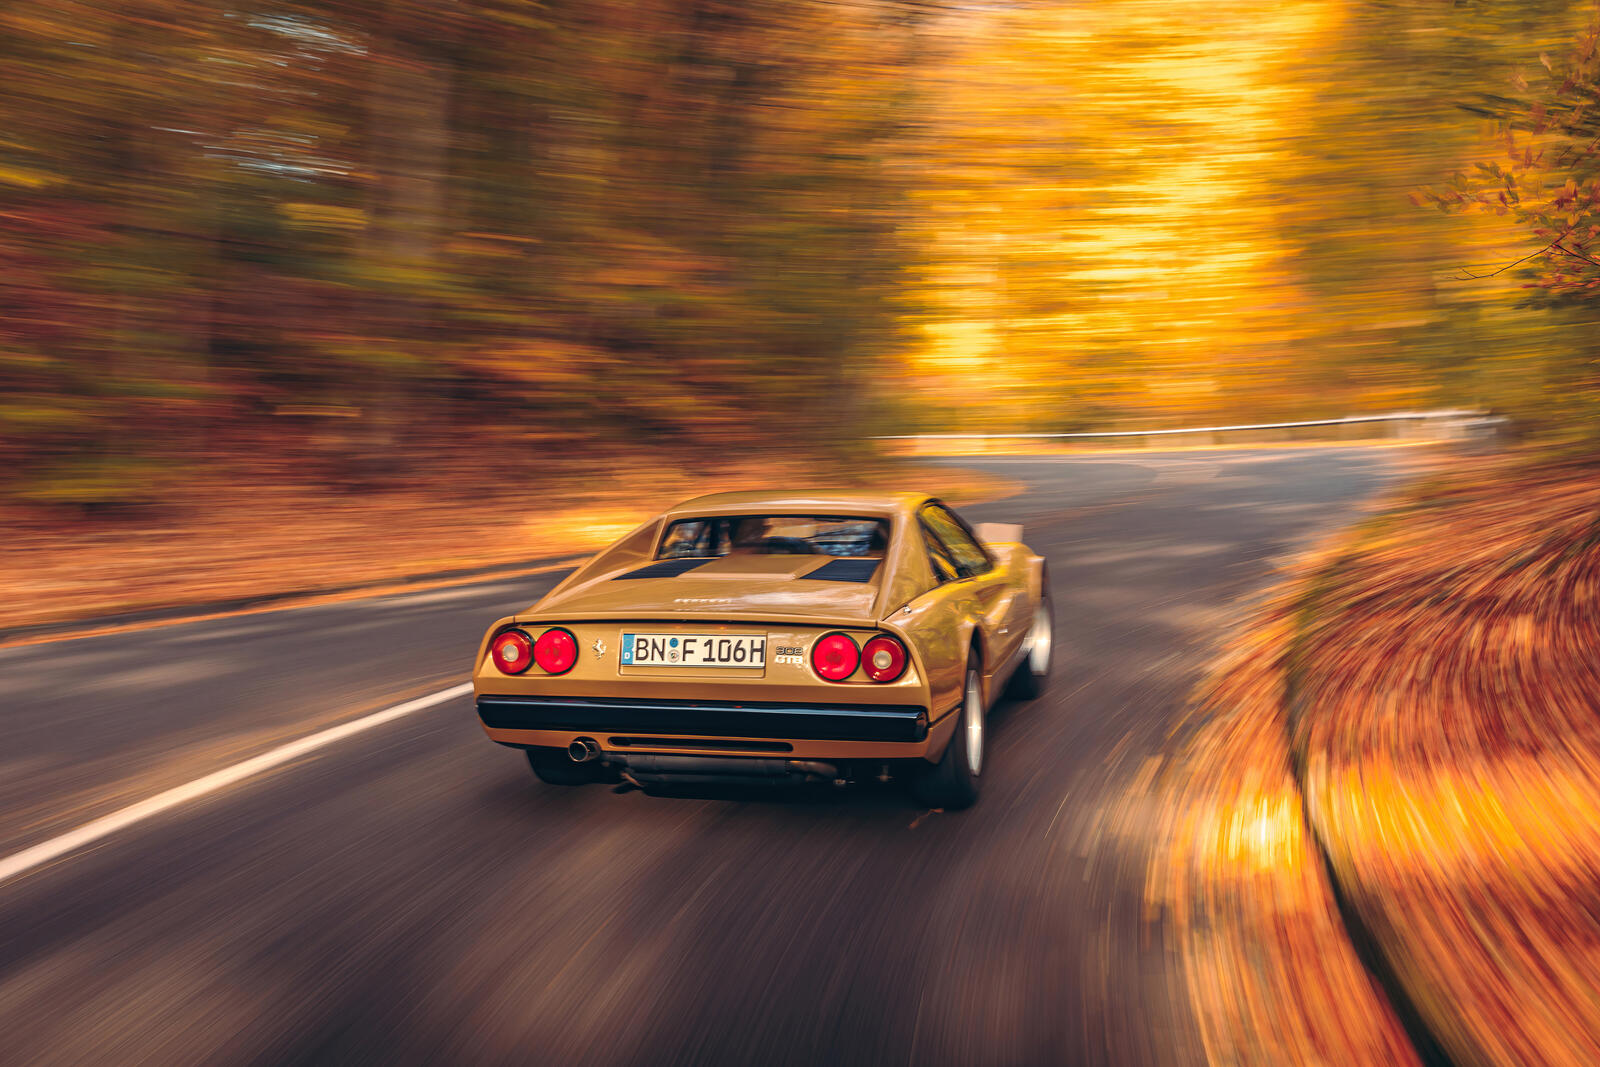 Бесплатное фото Ferrari 308 gtb на загородной осенней дороге